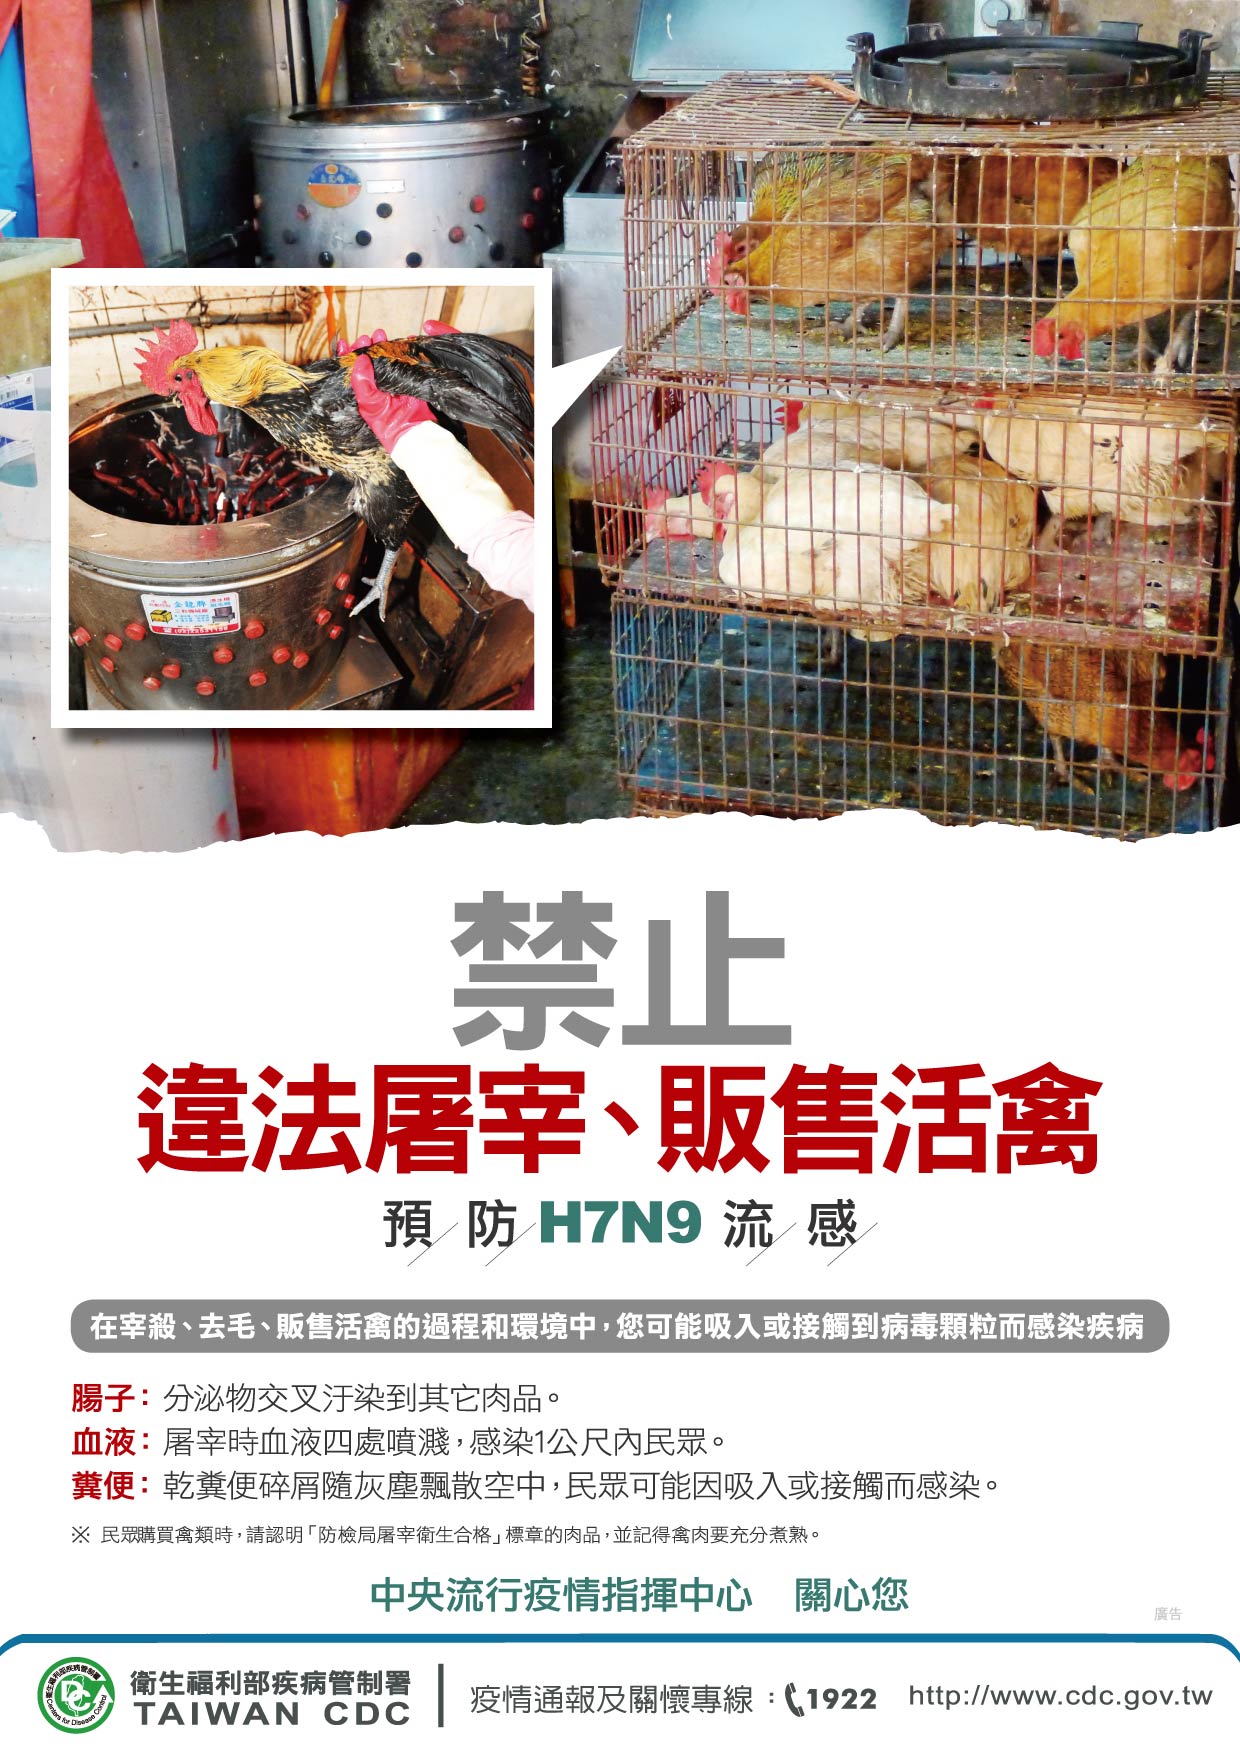 疾病管制署宣導海報 疾病管制署宣導海報 禁止違法屠宰、販售活禽